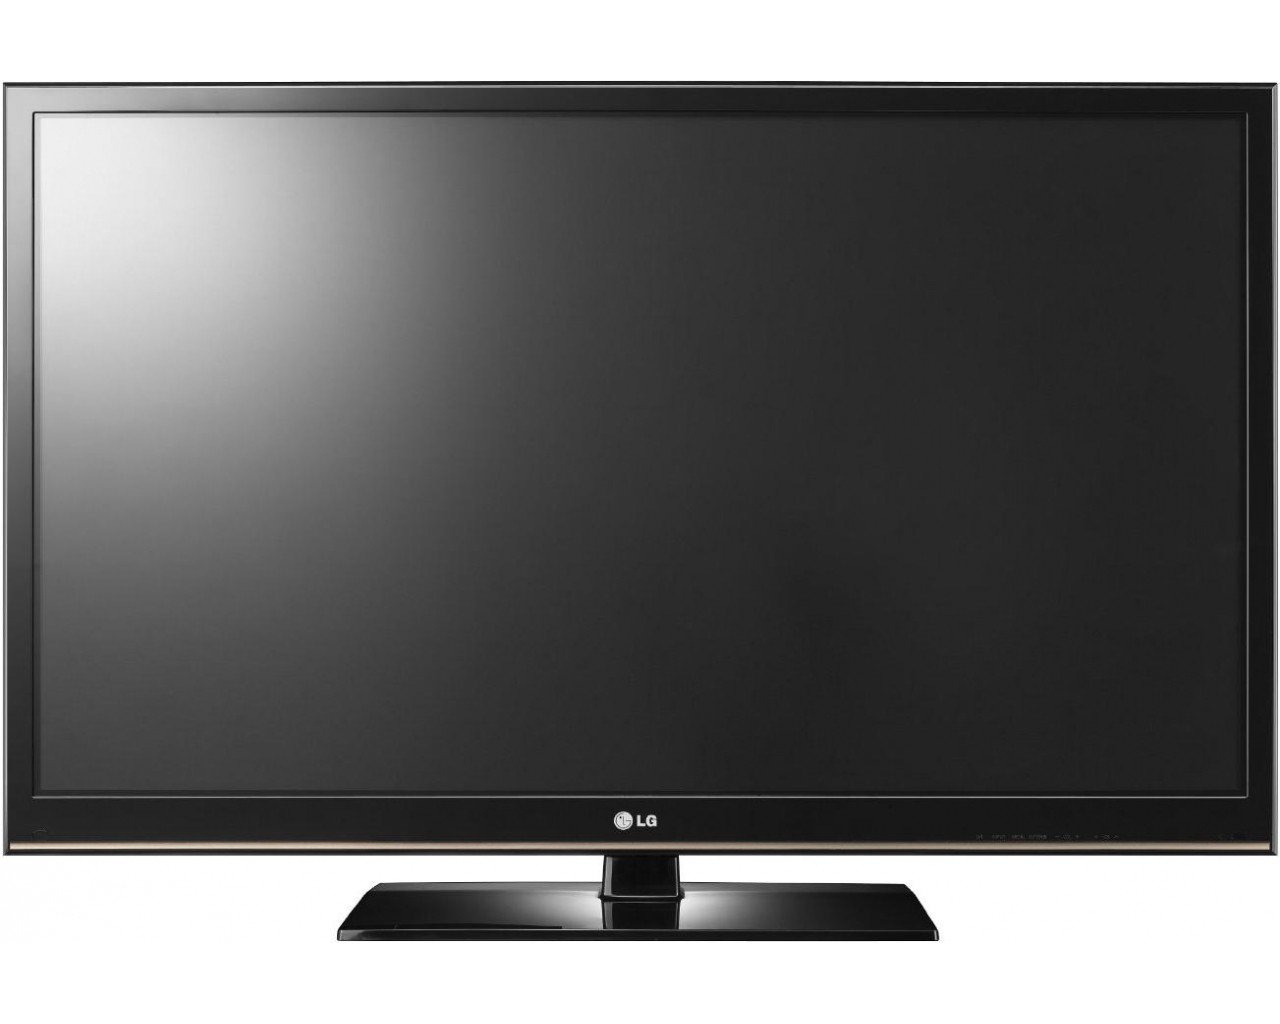 LCD Screen TV PNG